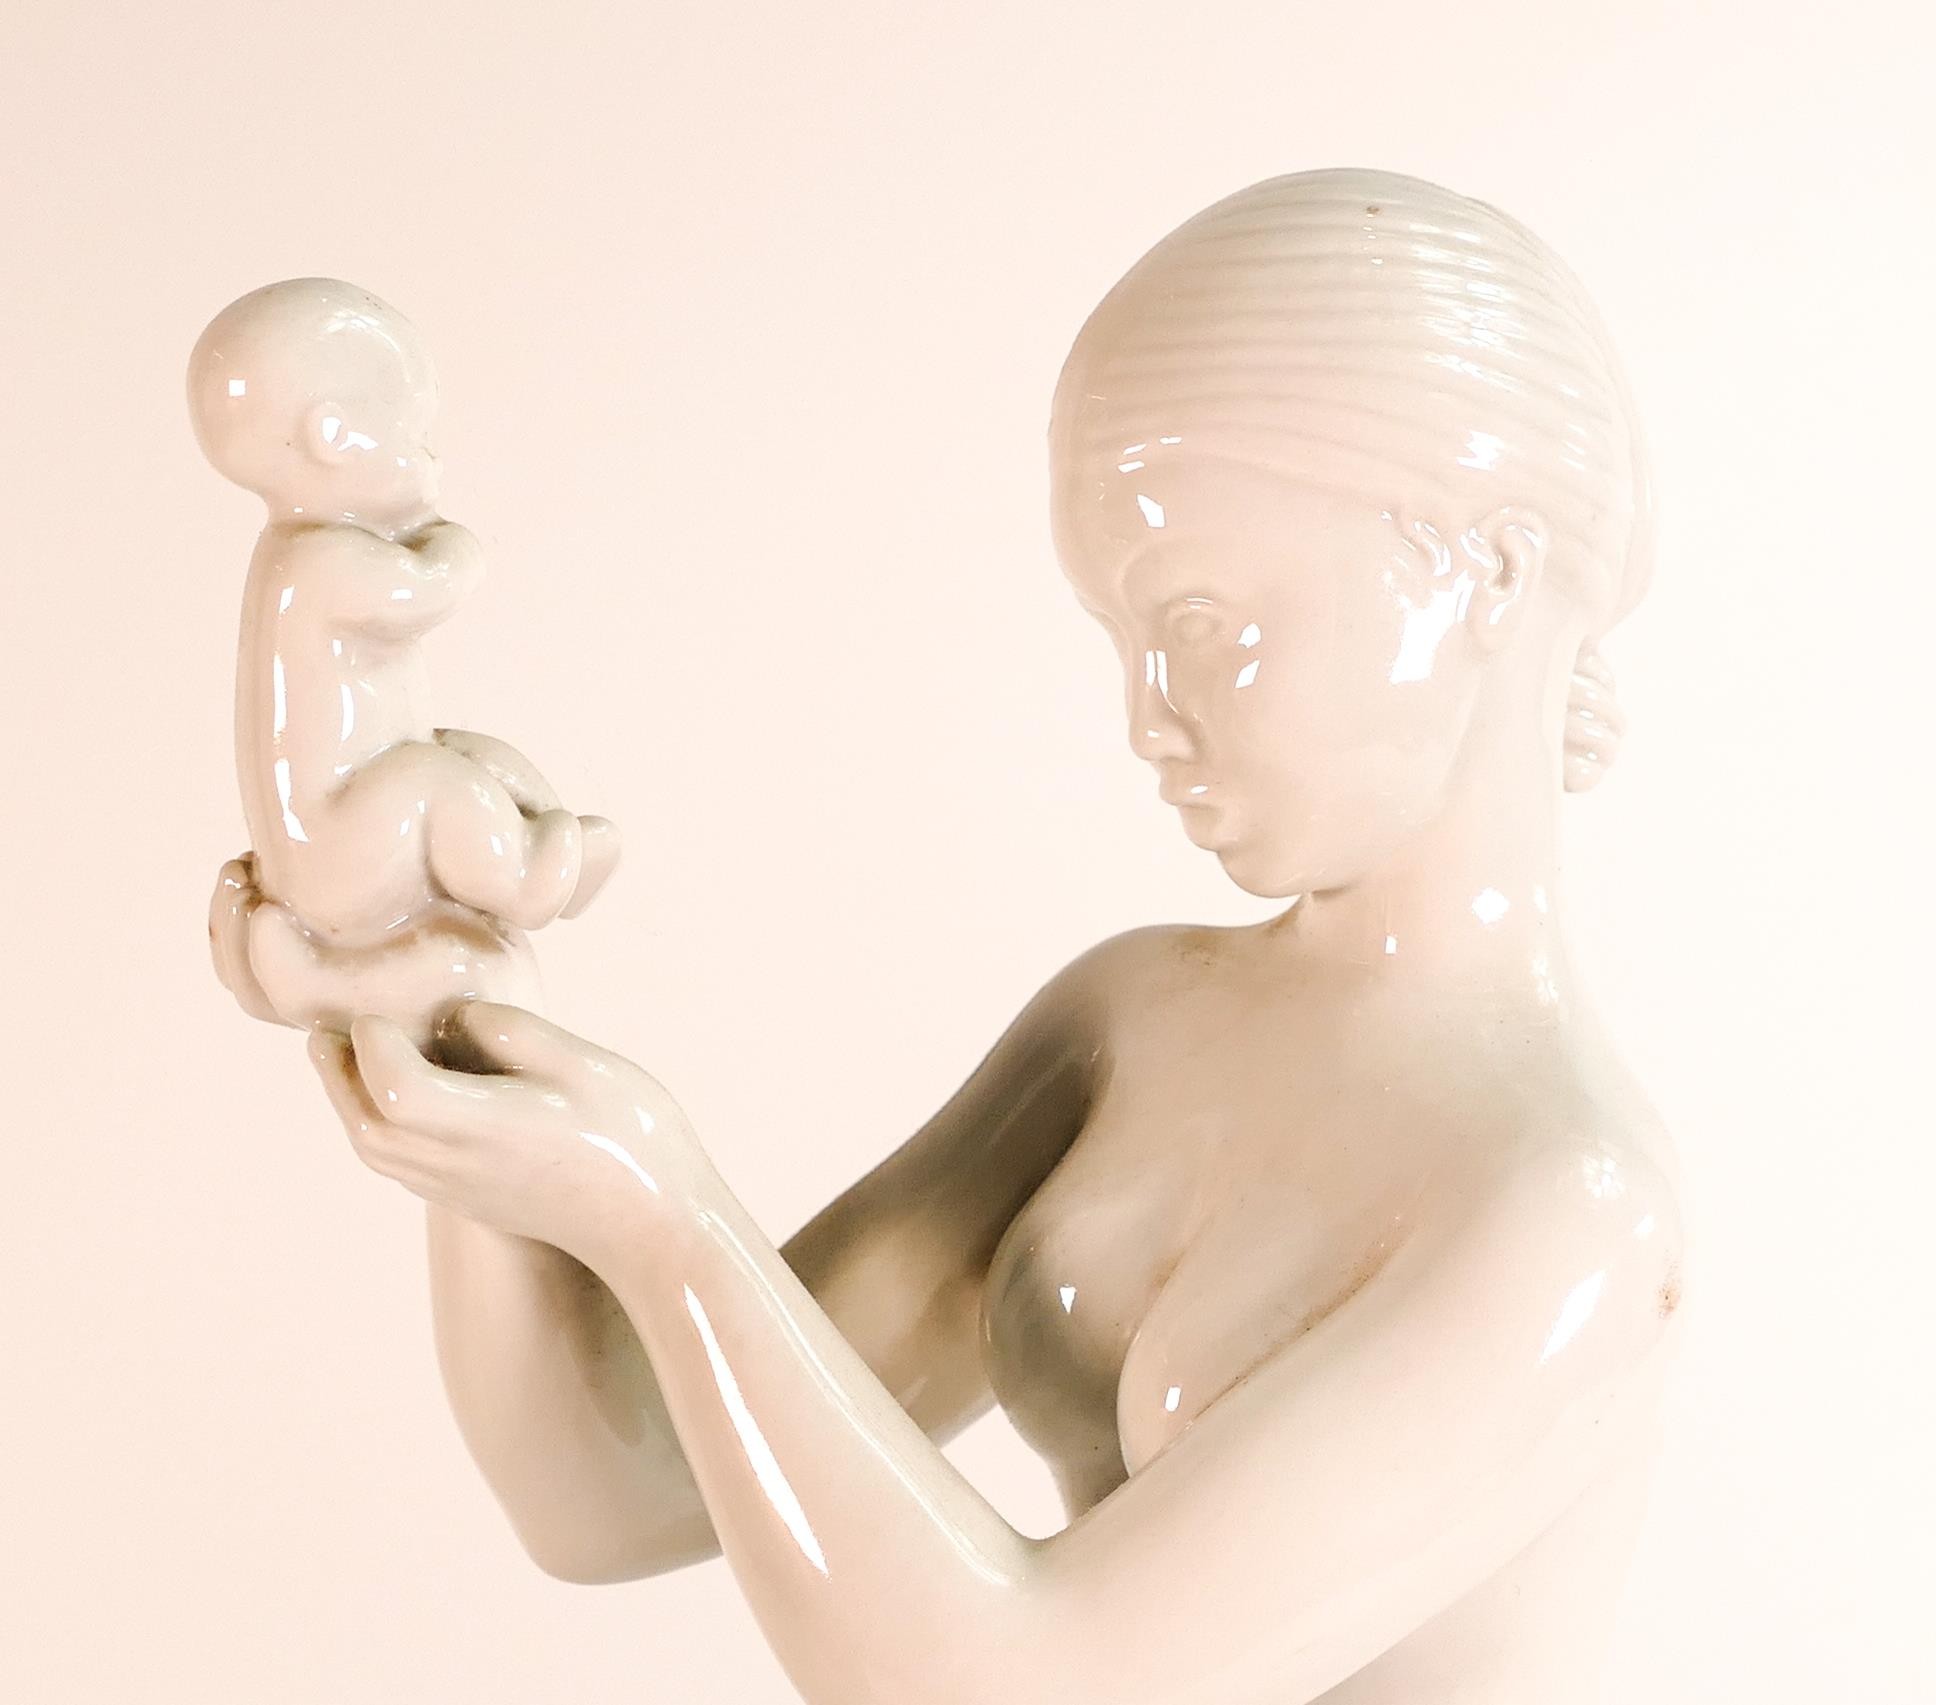 B&G Copenhagen mother & baby figure, height 36cm - Image 2 of 5